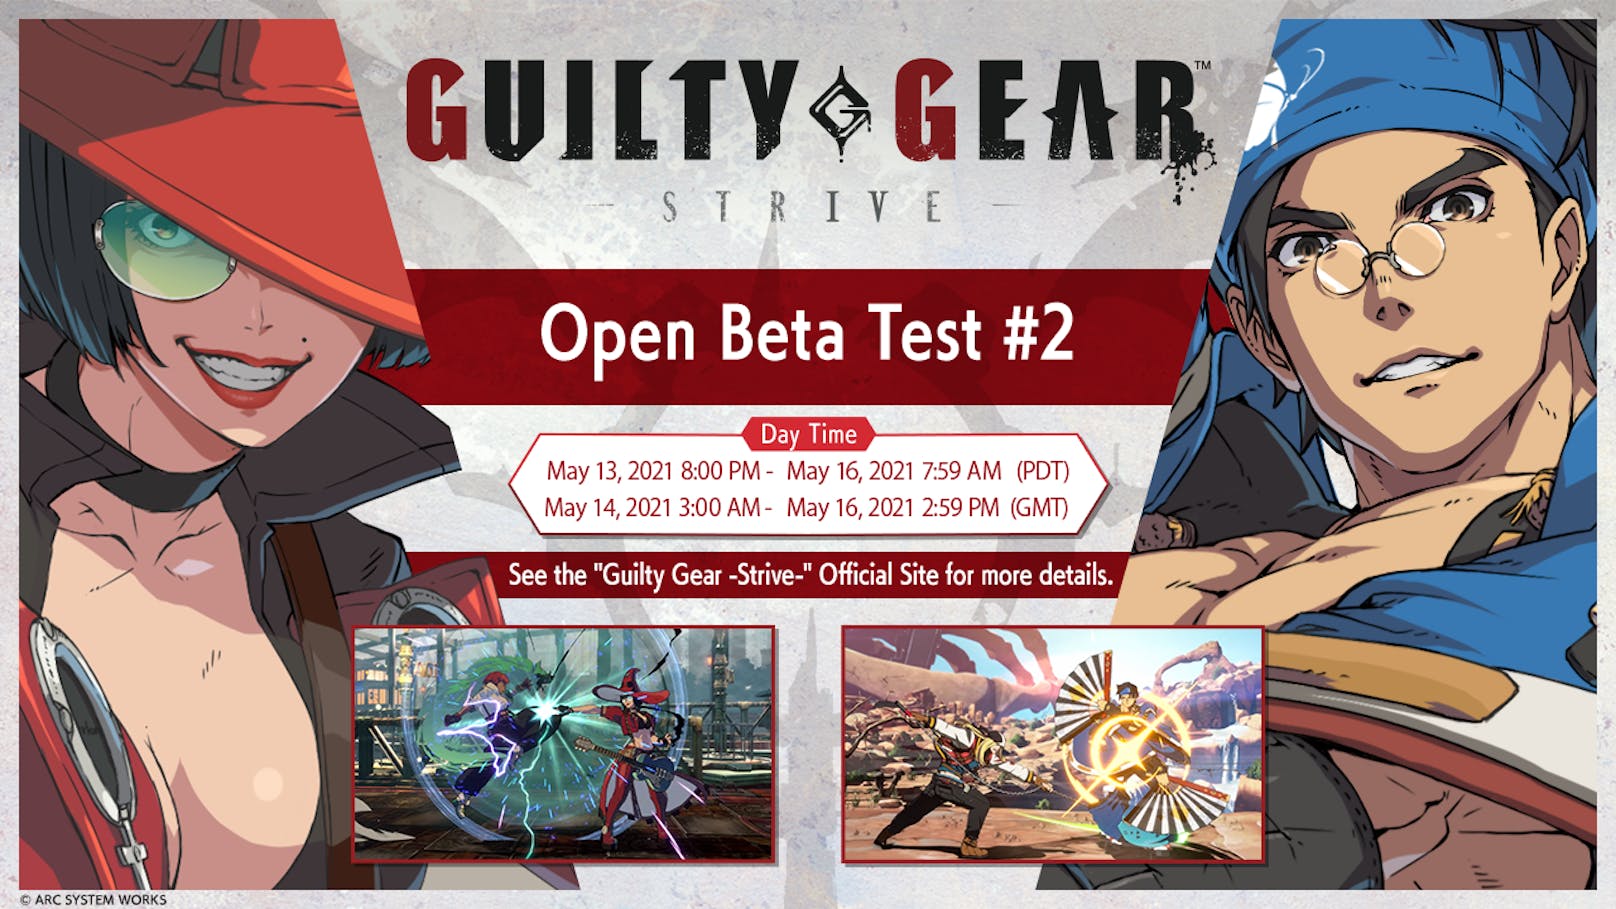 Zweiter Open-Beta-Test für "Guilty Gear -Strive-" findet vom 14. bis 16. Mai 2021 statt.